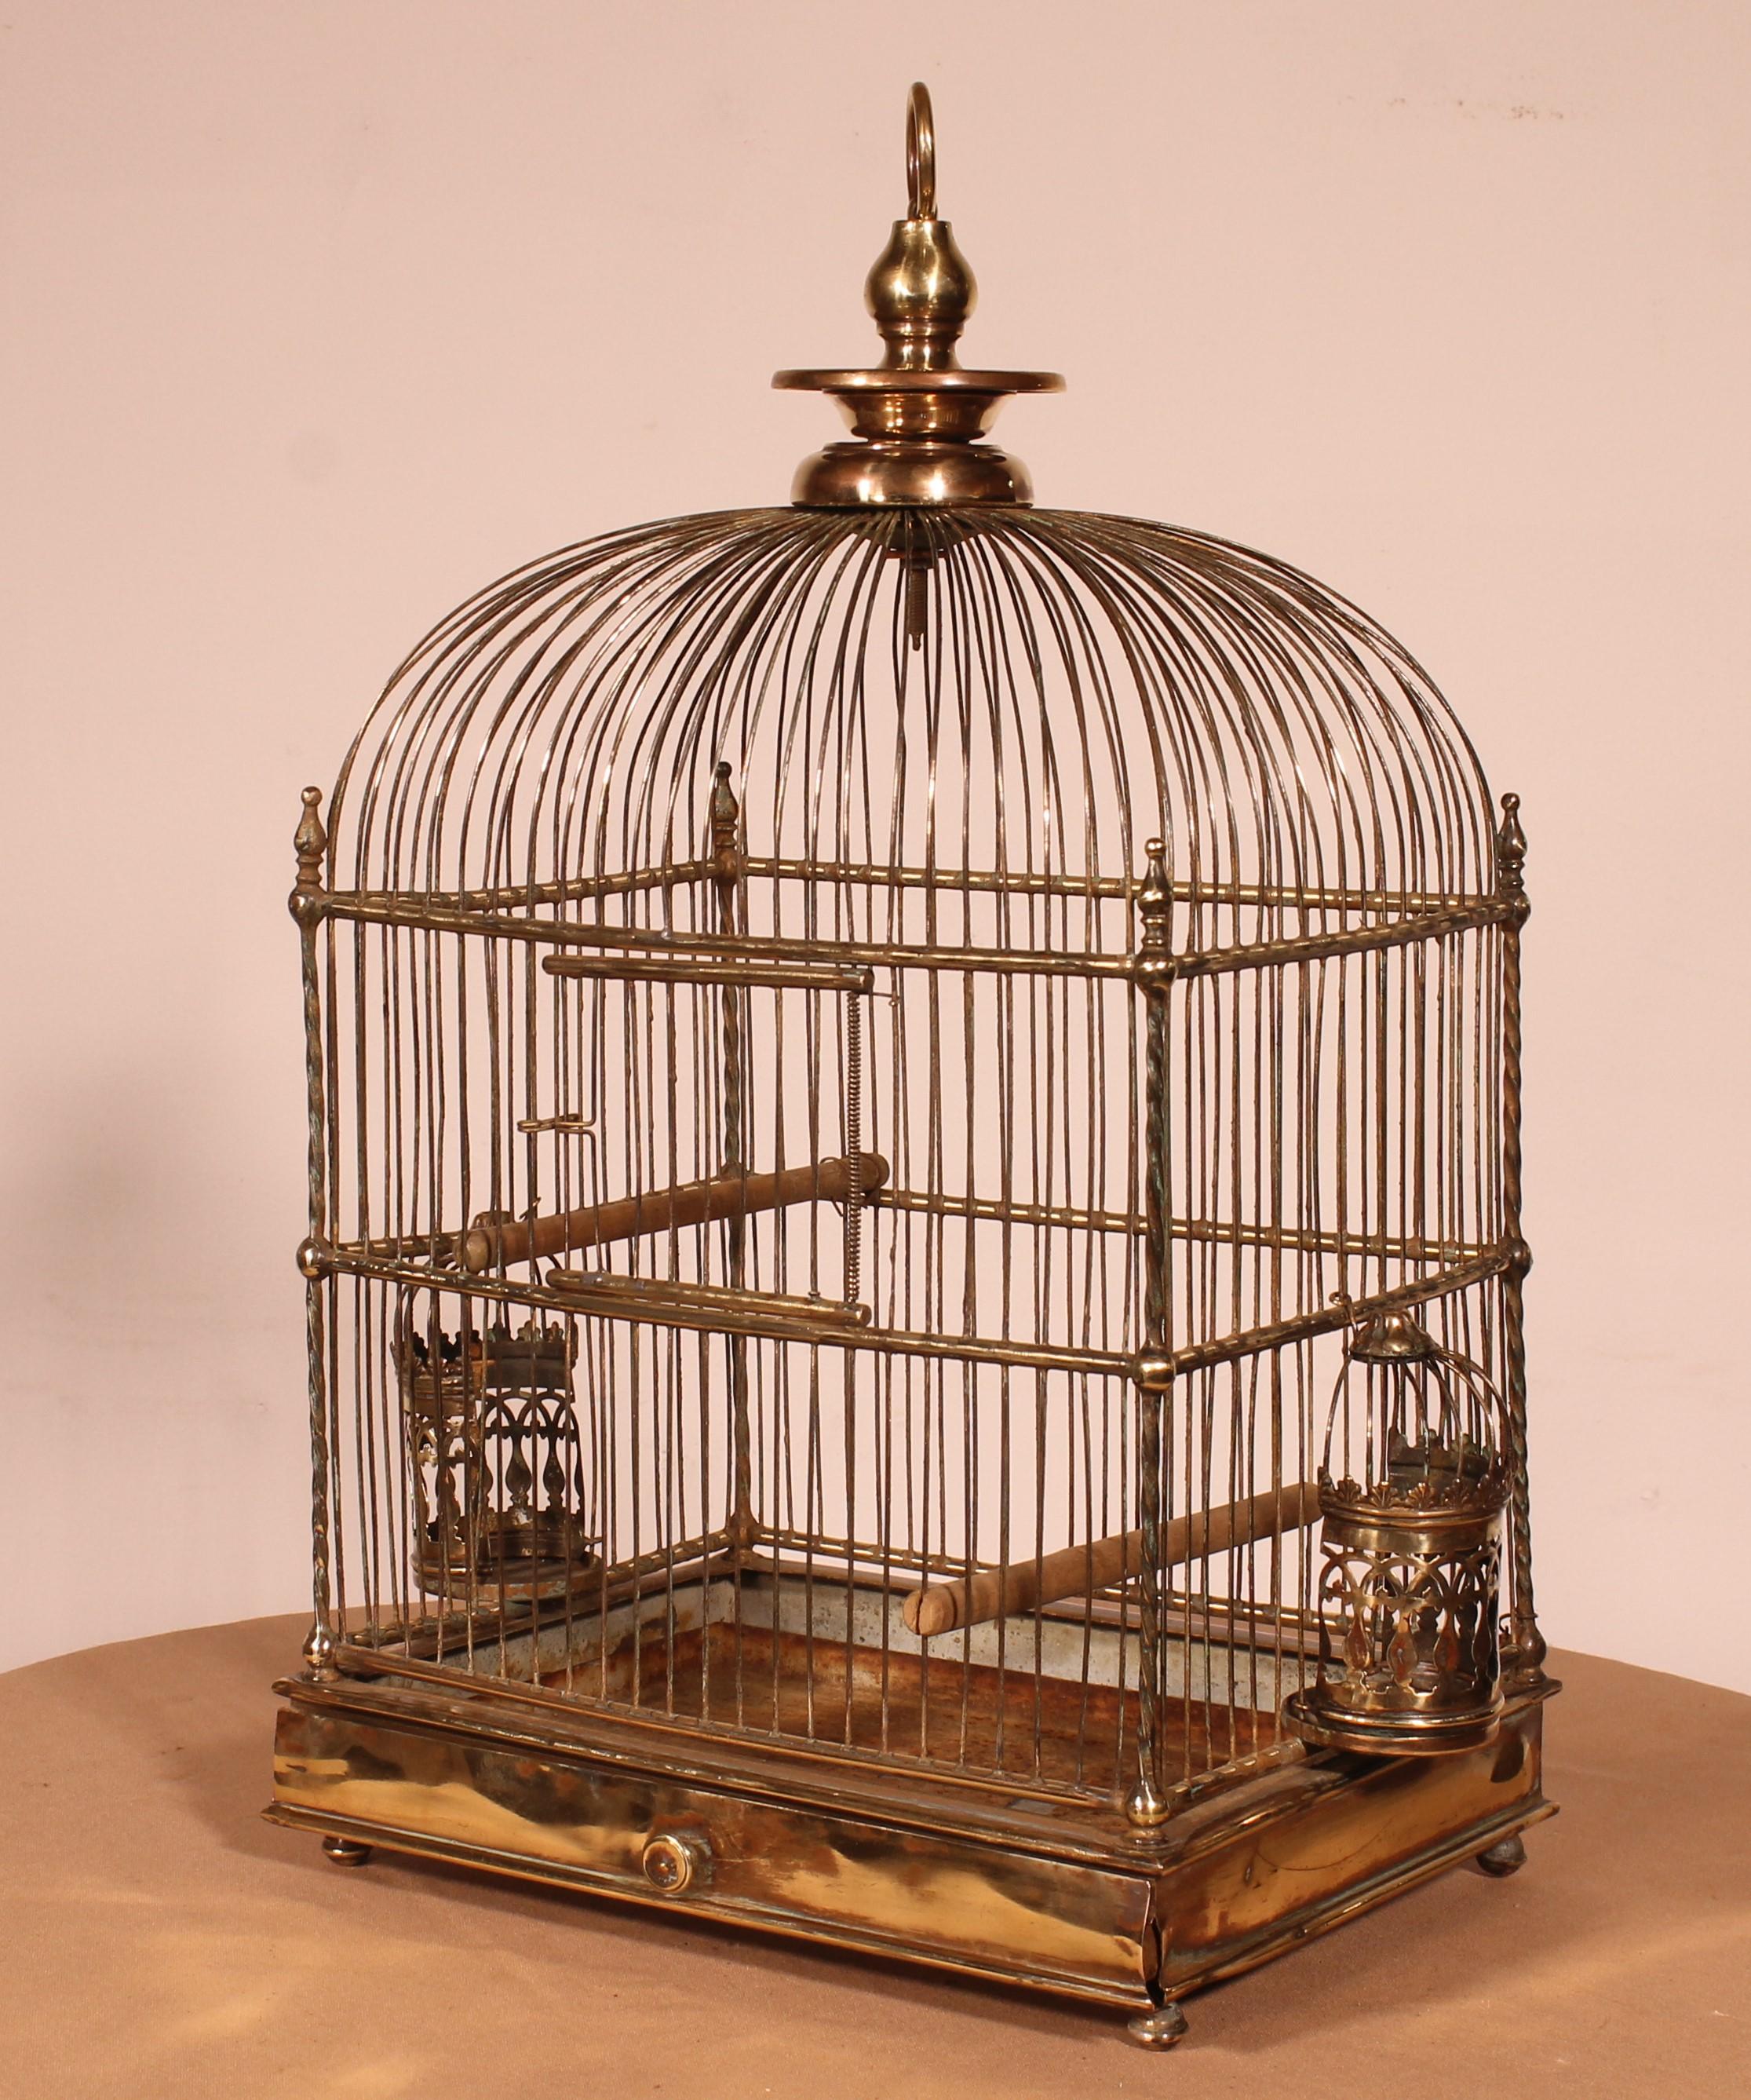 belle cage à oiseaux en laiton du 19e siècle
Beau petit modèle très raffiné avec deux récipients à manger en laiton très bien sculptés.
 Les montants sont torsadés, ce qui est inhabituel et très élégant
Belle patine et très bon état.
